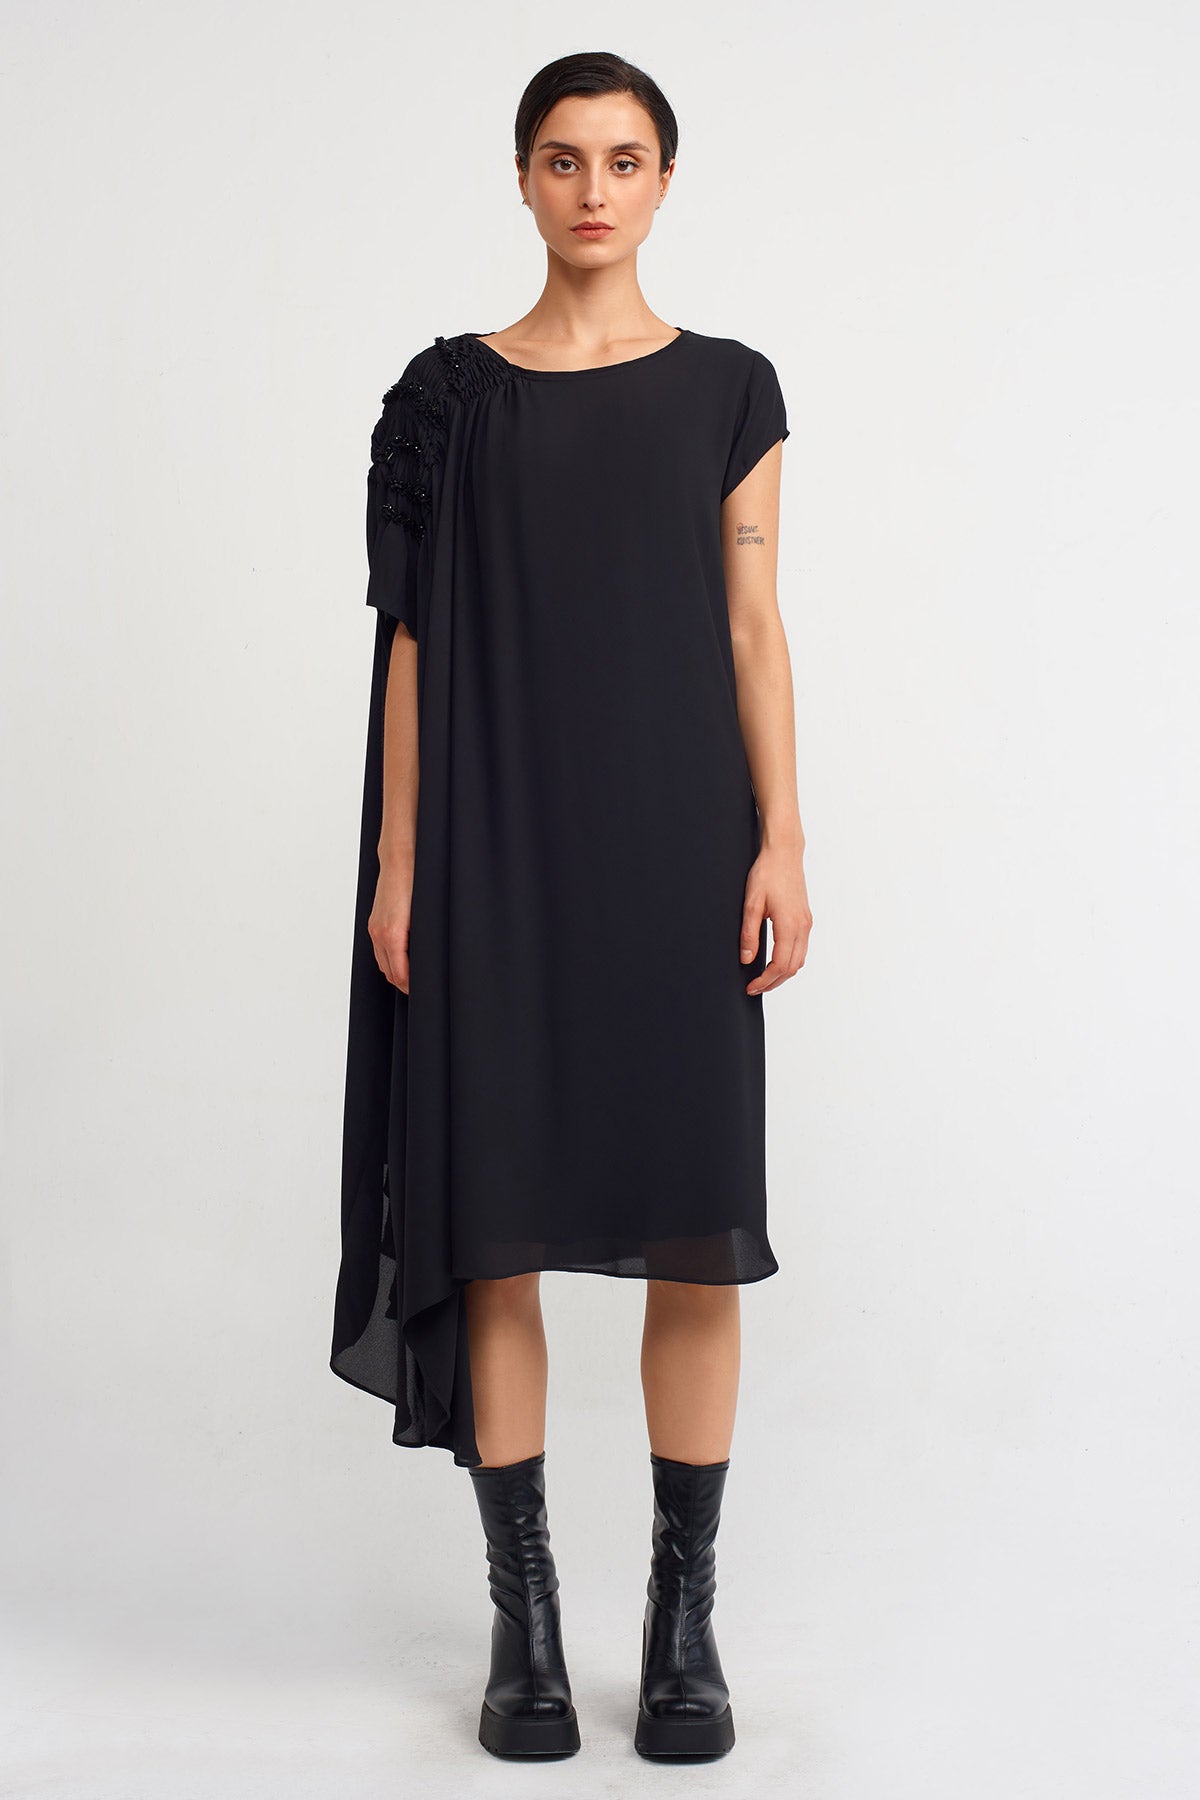 Black Elastic Gathered Sleeve Stylish Dress-K234014120